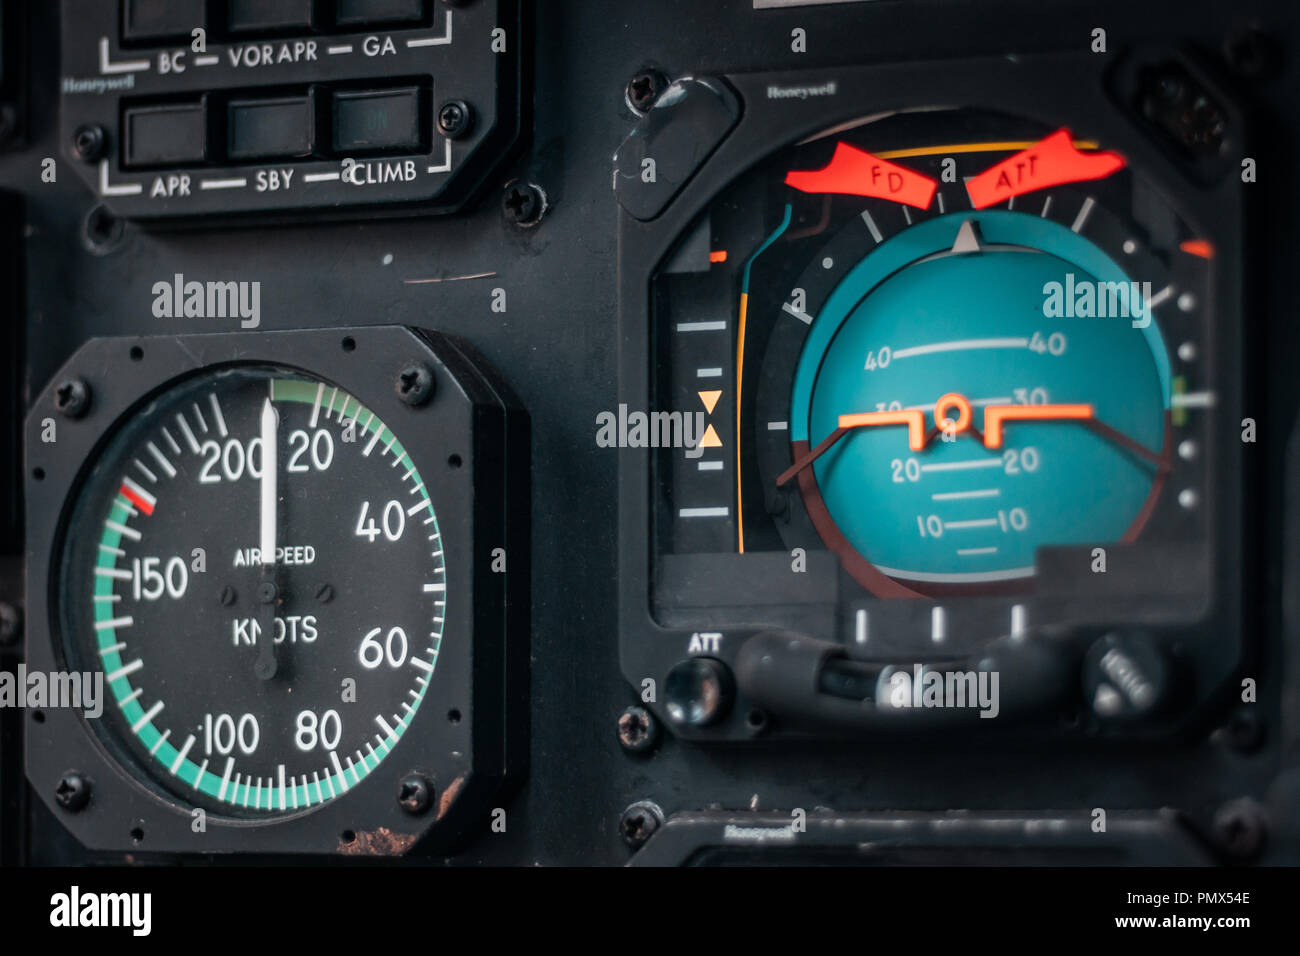 Kontrolle Armaturenbrett und Verkleidung im Cockpit eines Flugzeuge, Details von Druck, Geschwindigkeit, Höhe und Indikatoren. Krieg Konzept. Stockfoto